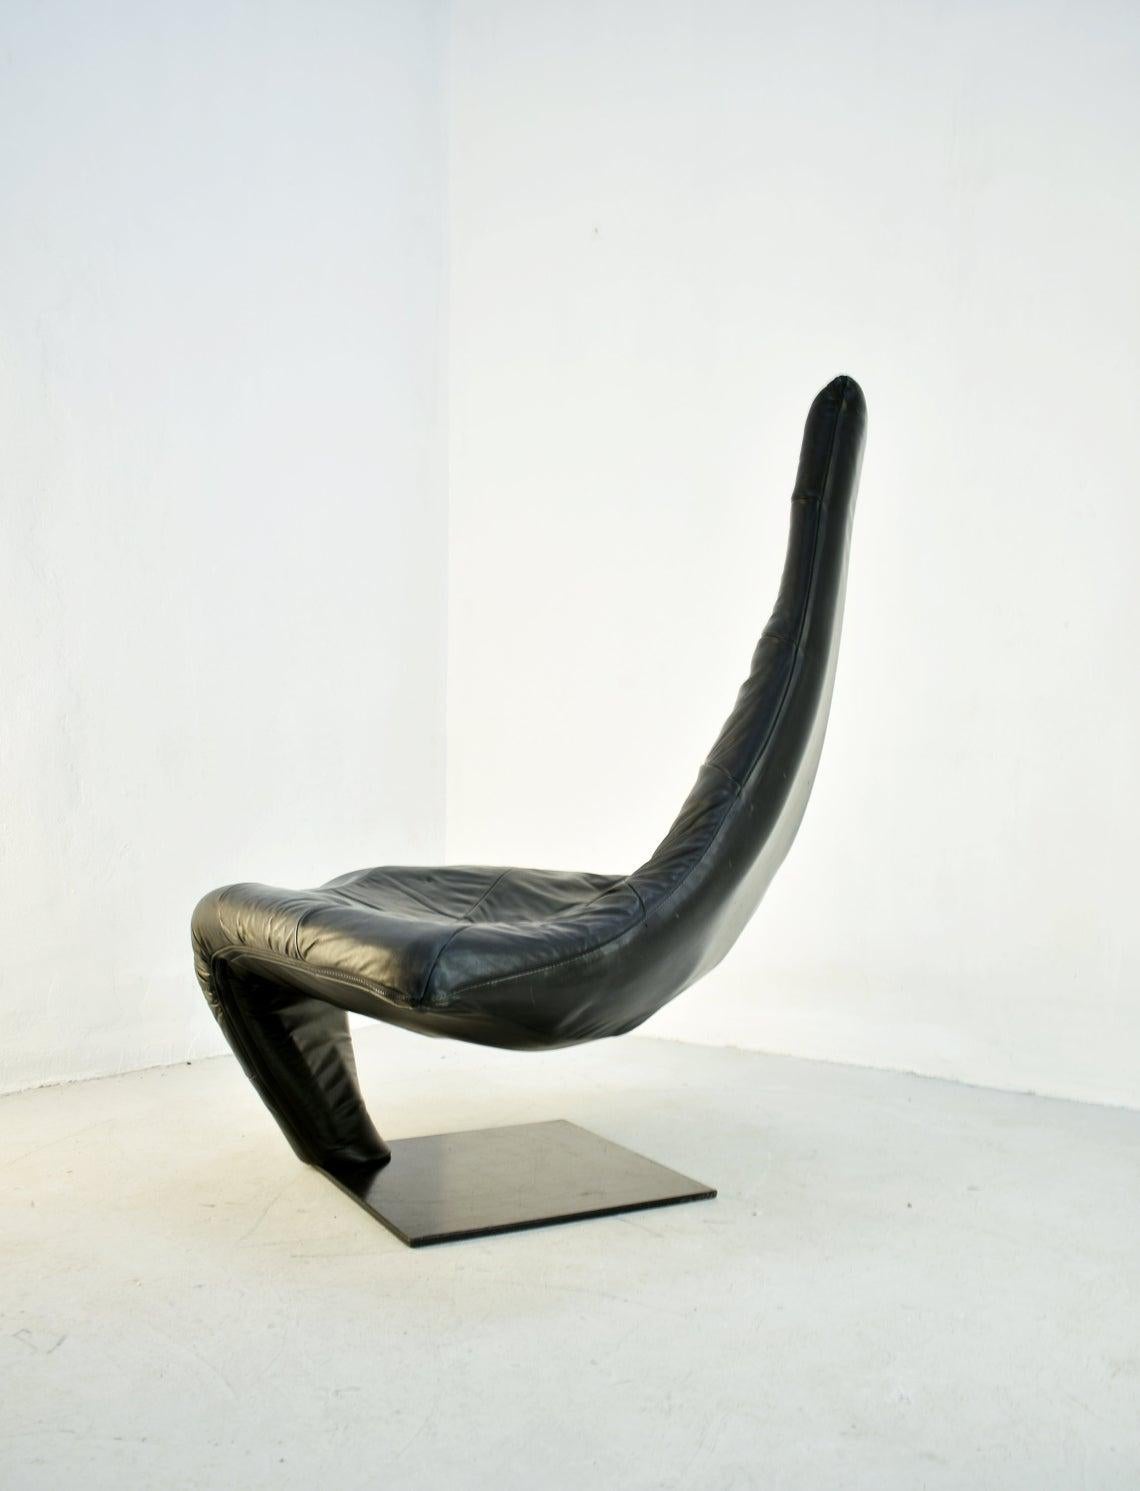 Lounge Chair in Black Leather, Model 'Turner' by Jack Crebolder for Harvink 1